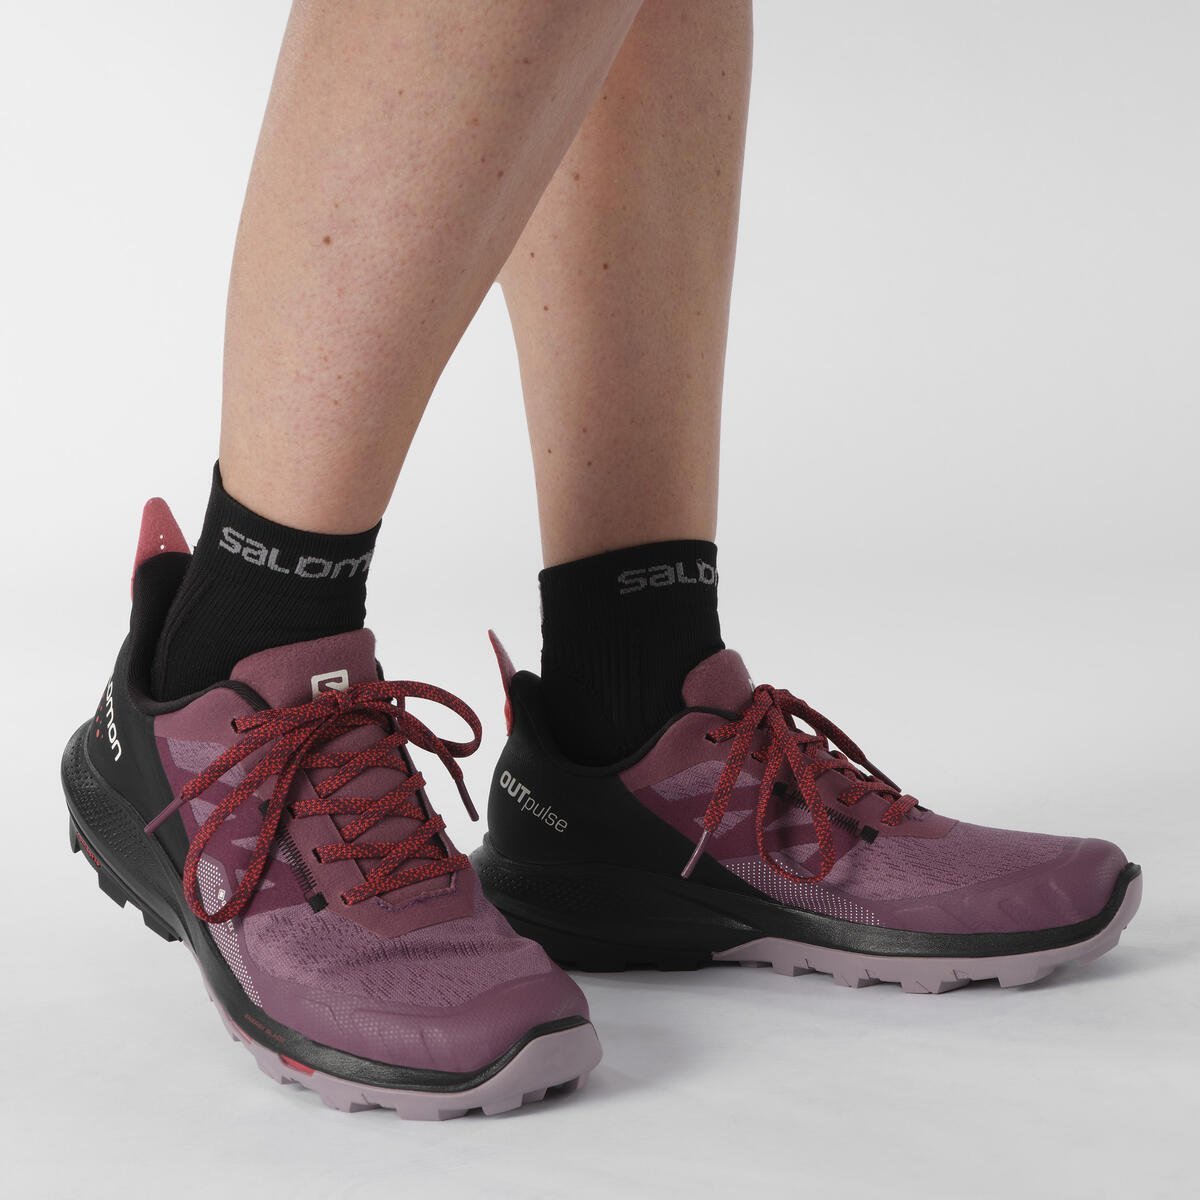 Topánky Salomon OUTpulse GTX W - fialová